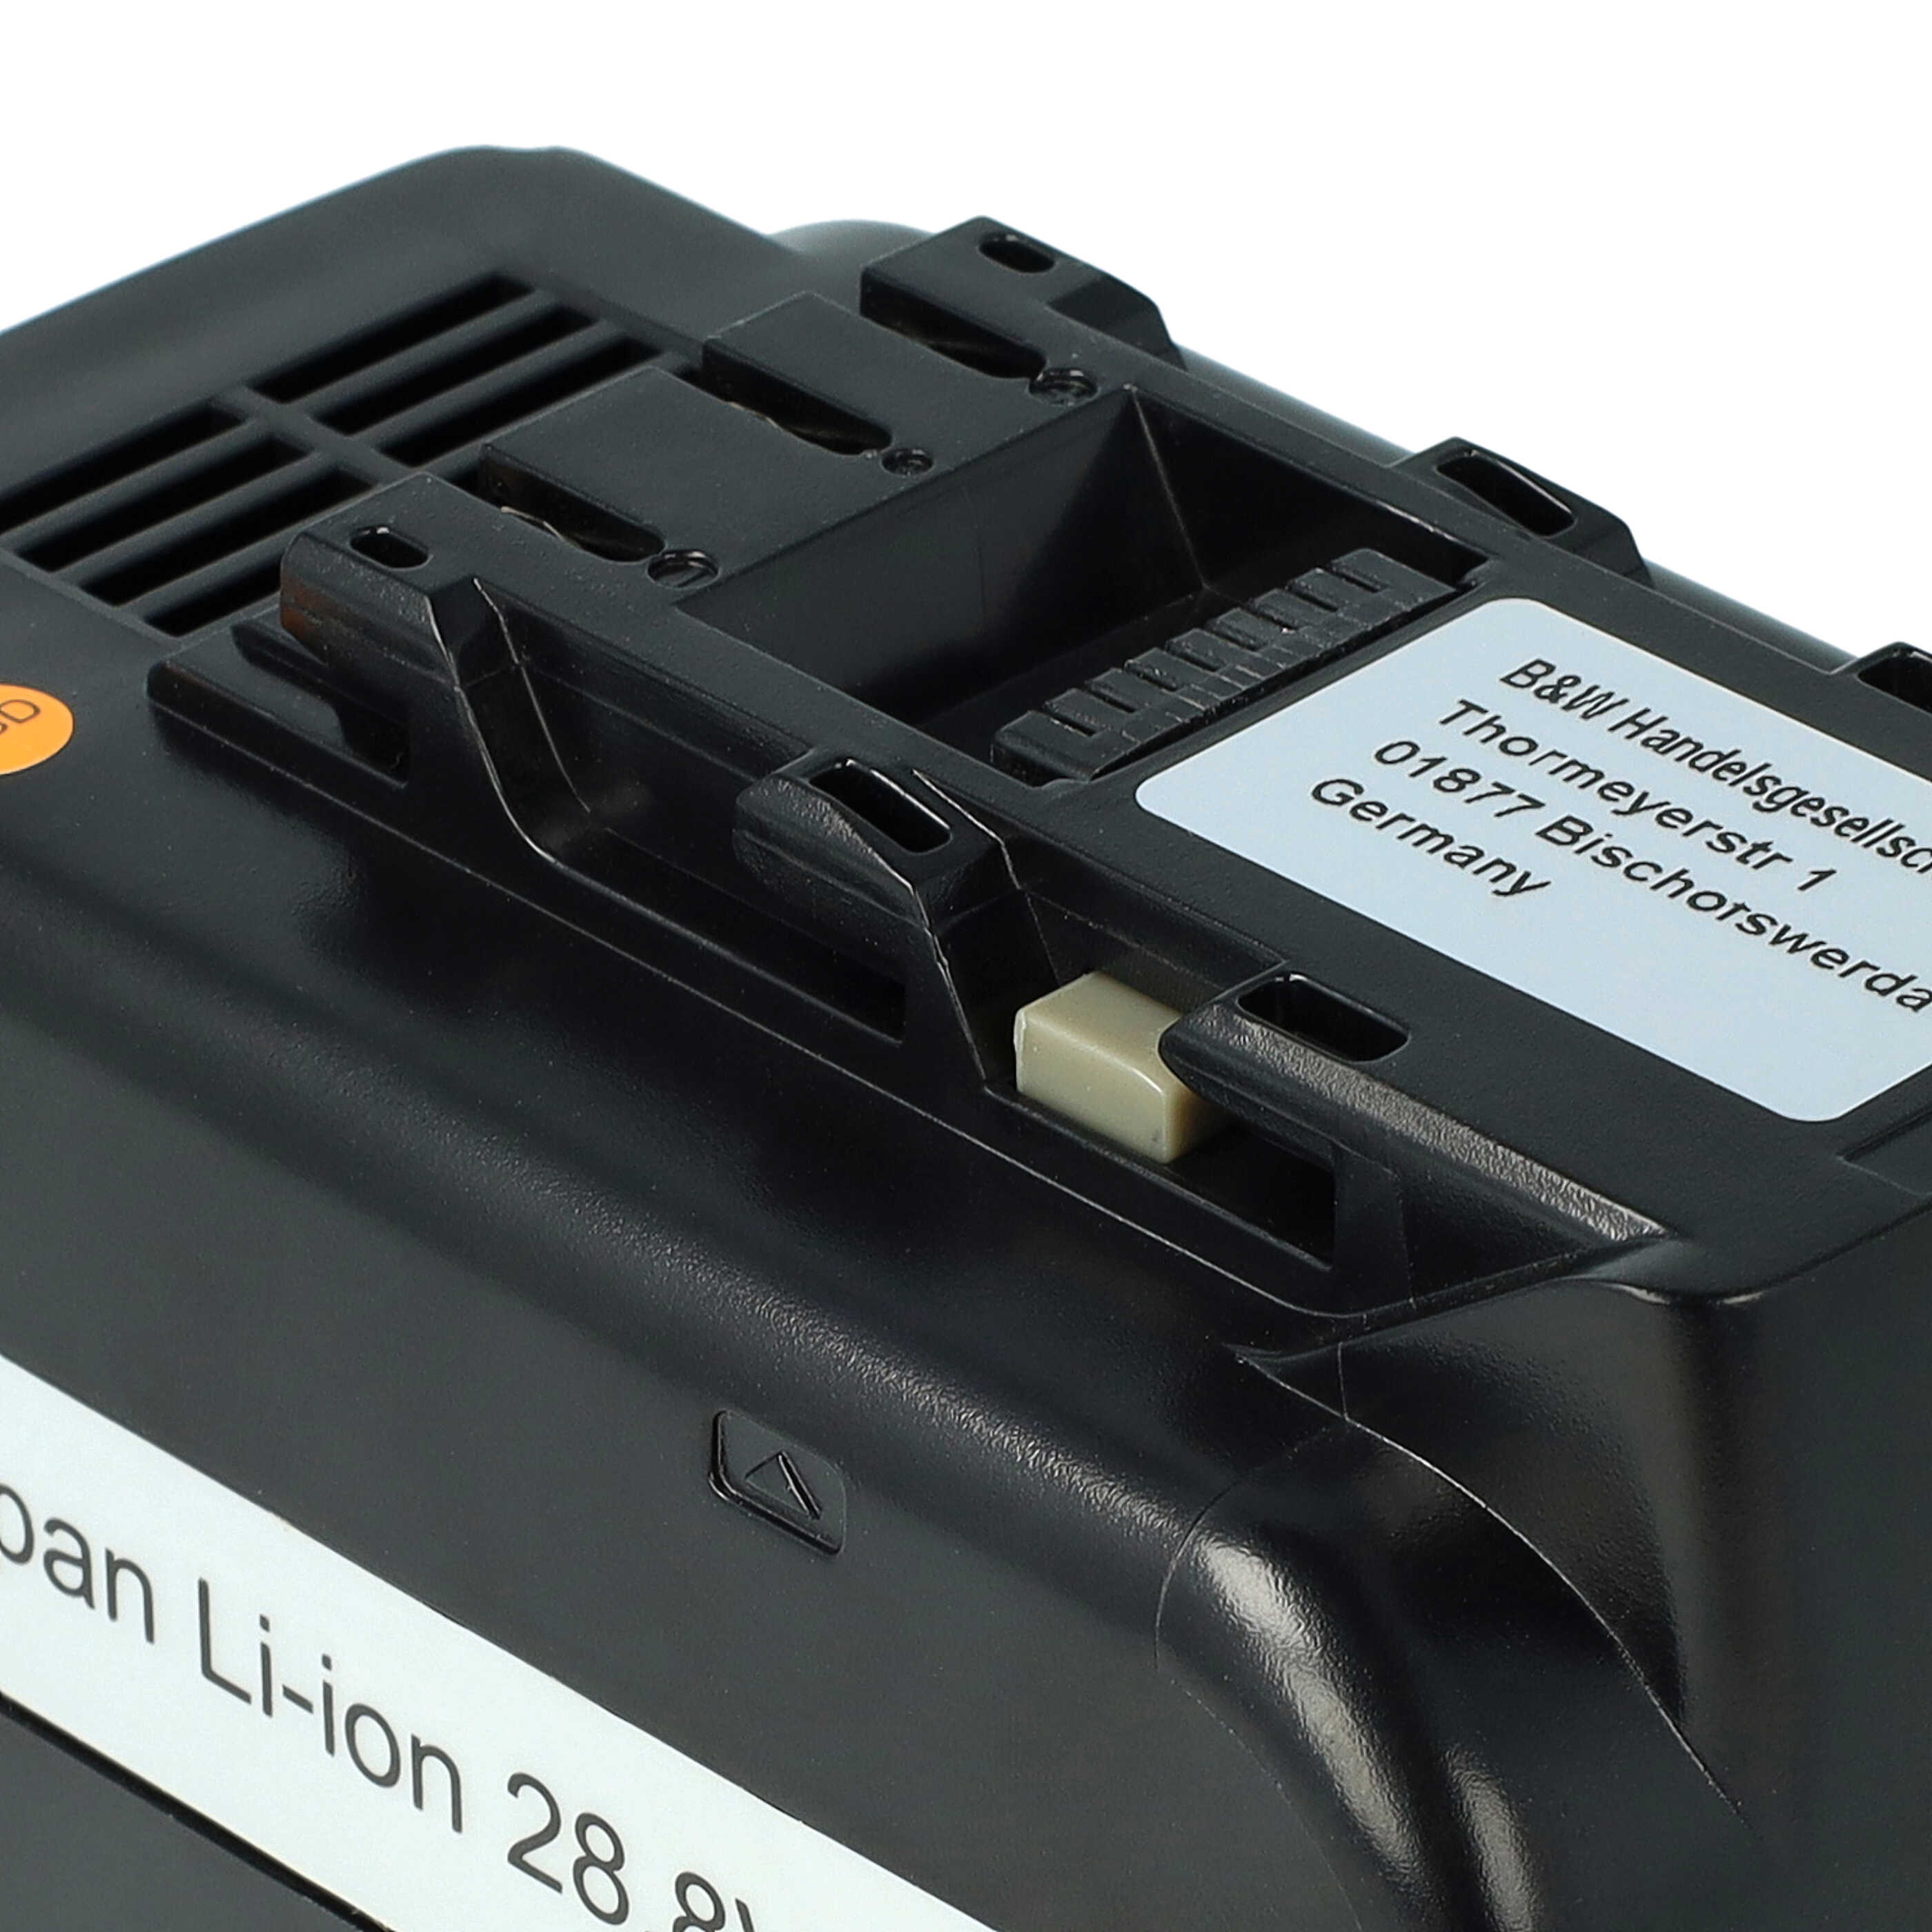 Akumulator do elektronarzędzi zamiennik Panasonic EZ9L80, EY9L80B, EY9L80 - 5000 mAh, 28,8 V, Li-Ion